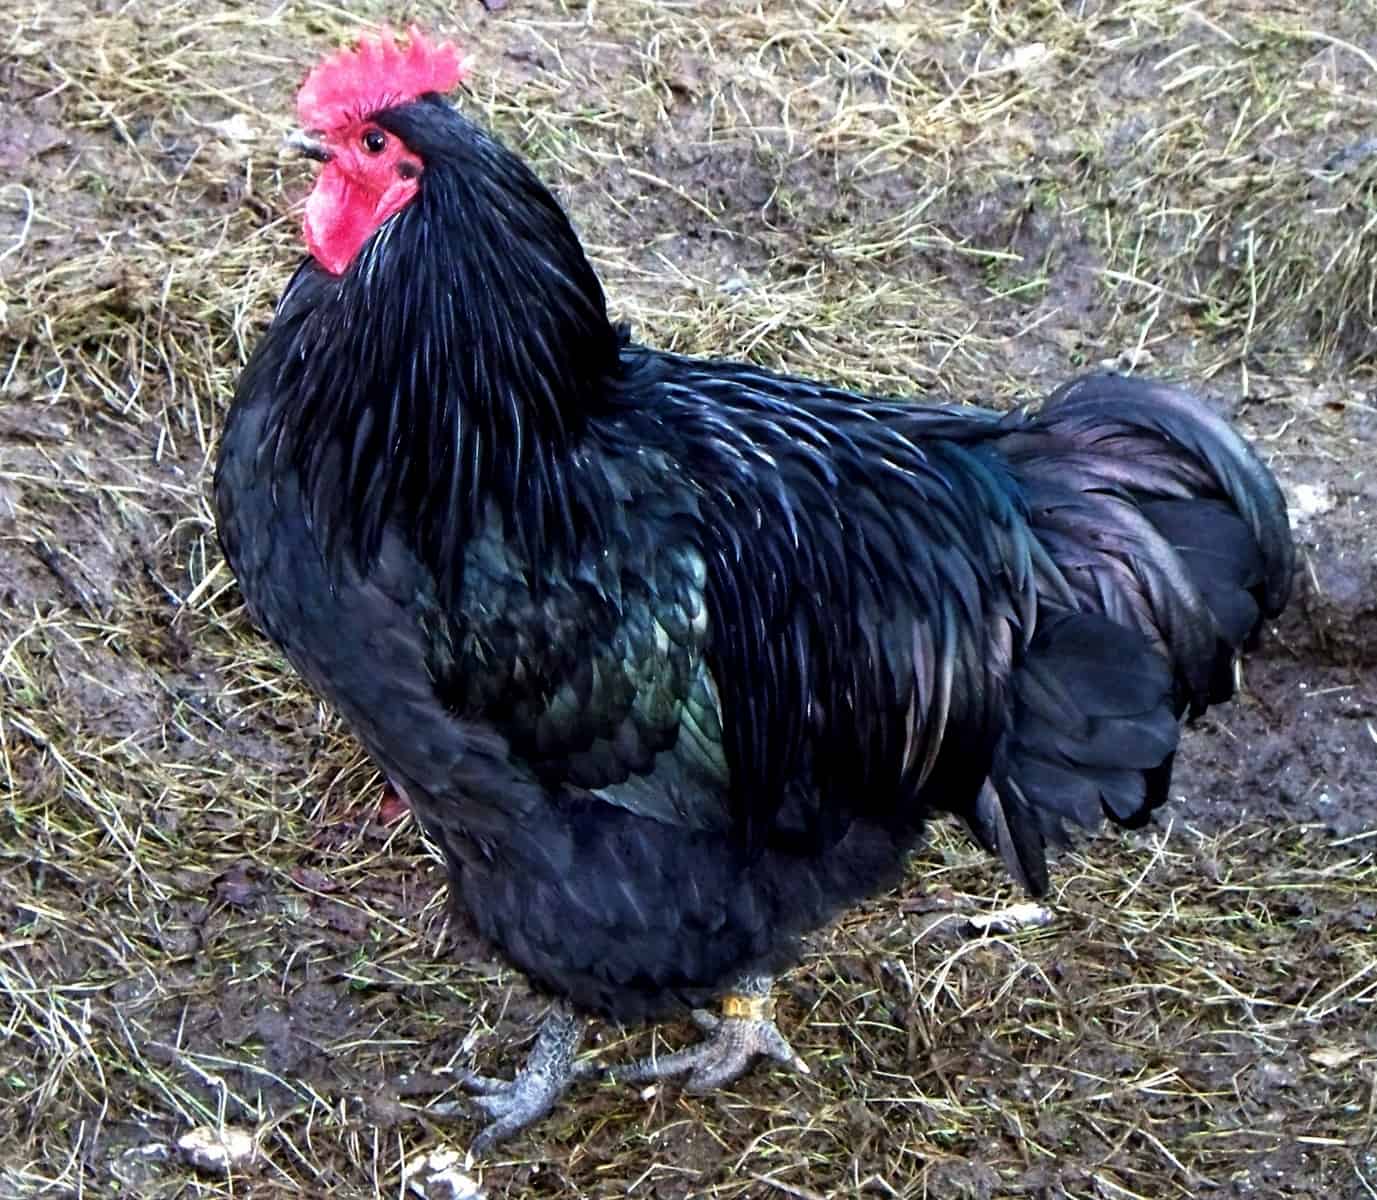 Java black chicken